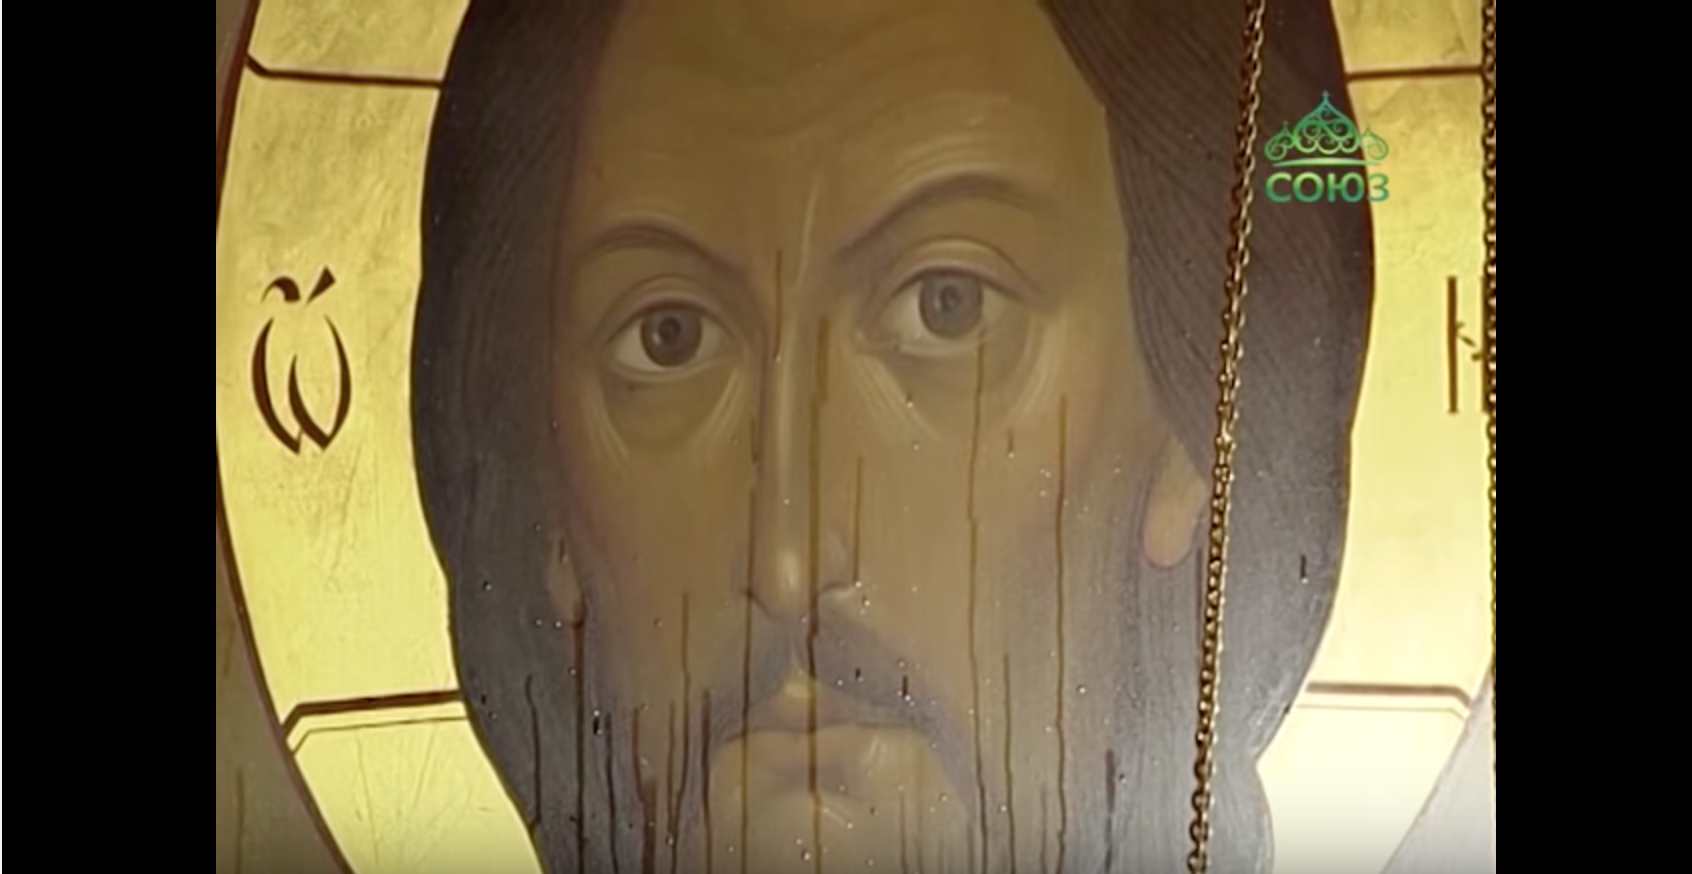 Deux icônes d’une église de la région de Saint-Pétersbourg exsudent une huile miraculeuse